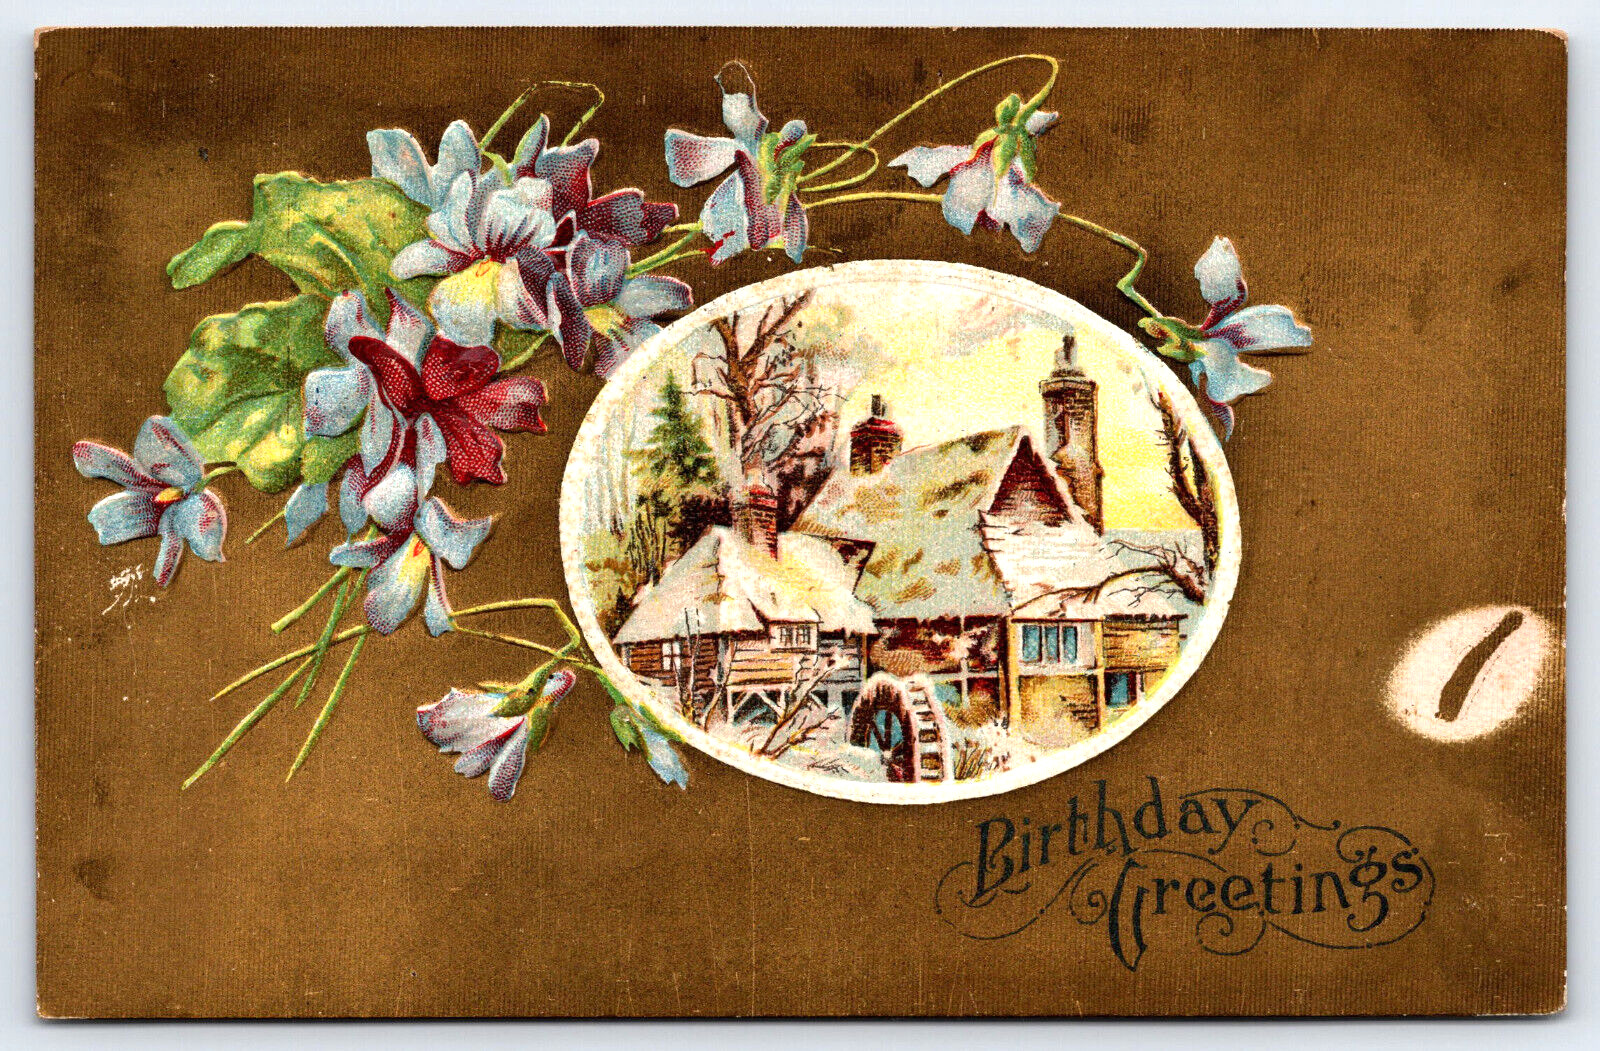 Original Vintage Antique Postcard Birthday Greetings Embossed Flowers Gold 1909